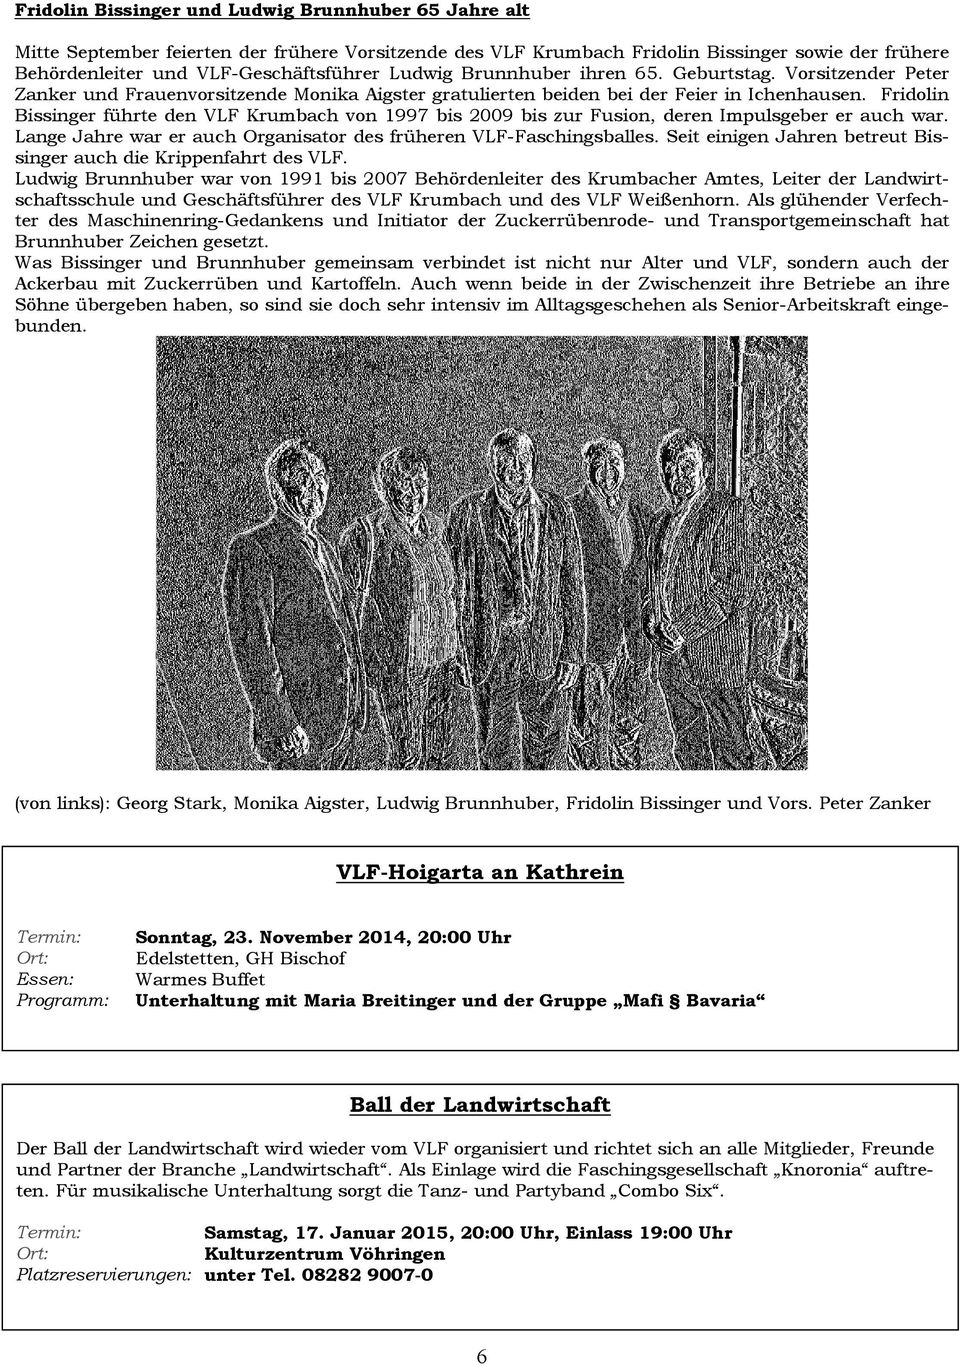 Fridolin Bissinger führte den VLF Krumbach von1997 bis 2009 biszur Fusion, deren Impulsgeber erauchwar. Lange Jahrewar er auch Organisator desfrüherenvlf-faschingsballes.